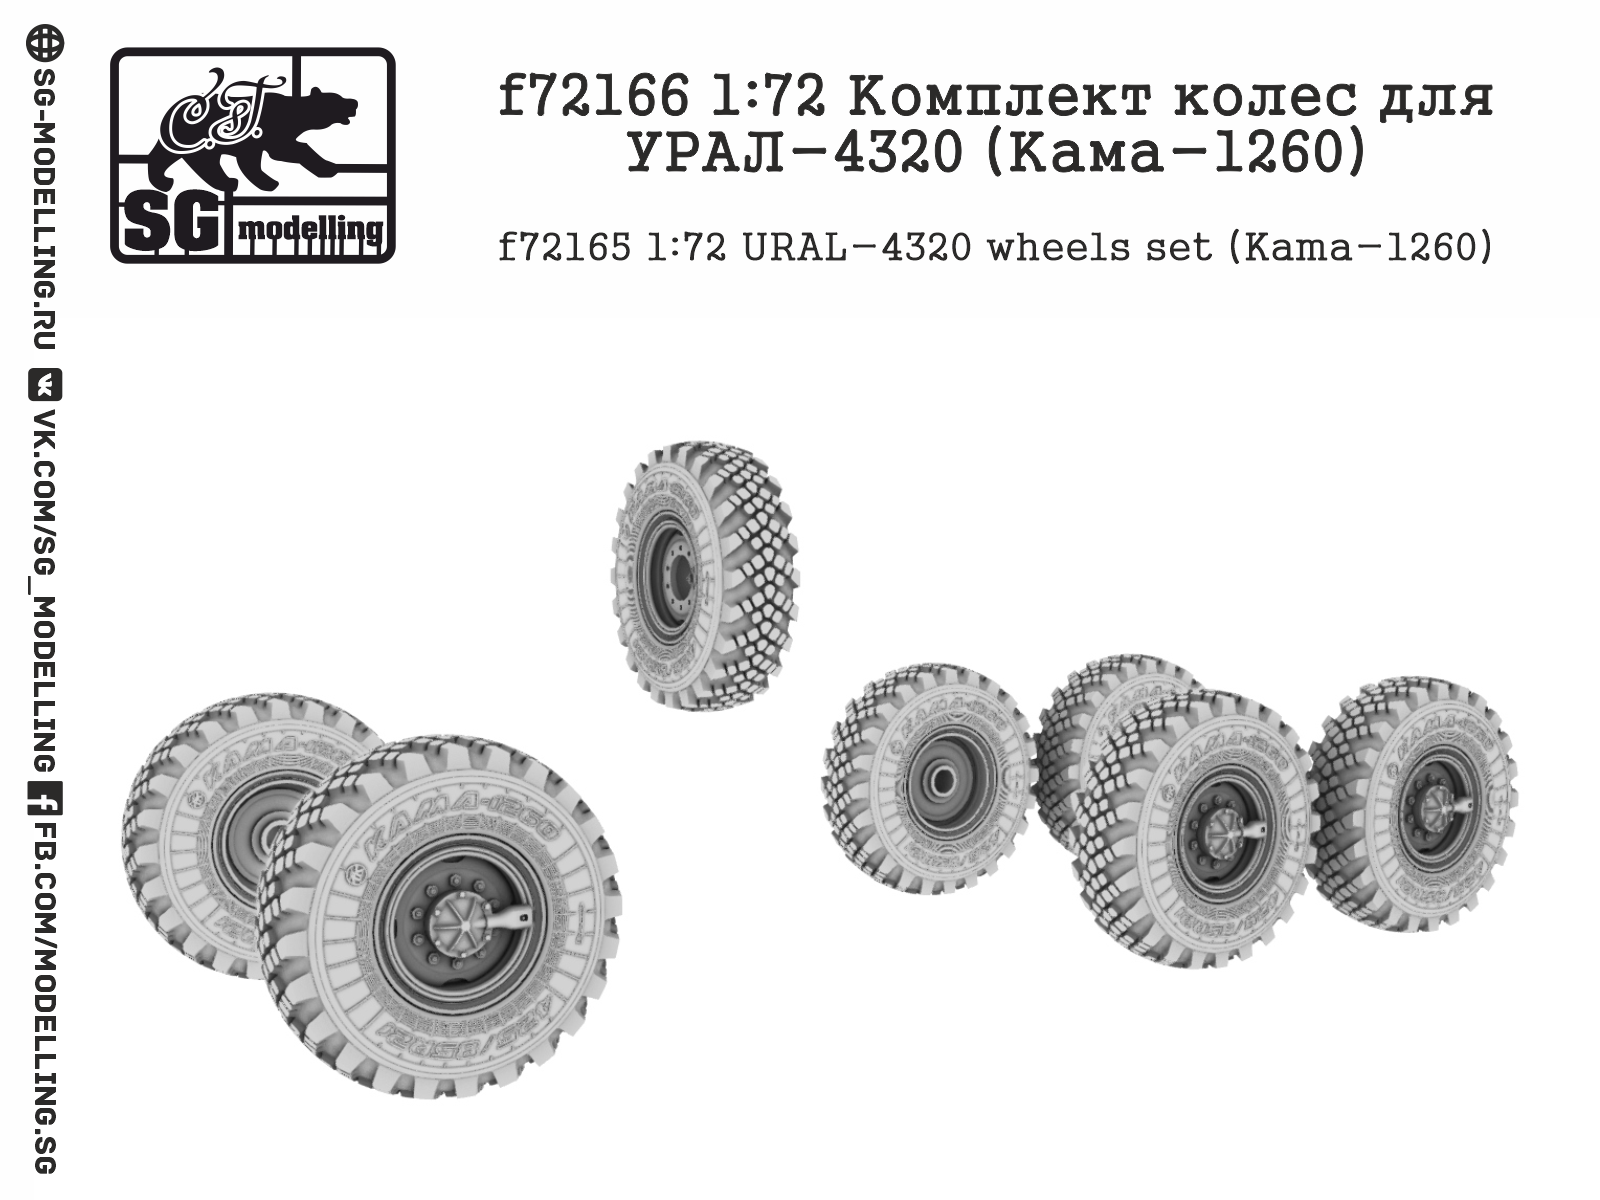 f72166  дополнения из смолы  Комплект колес для УР@Л-4320 (Кама-1260)  (1:72)